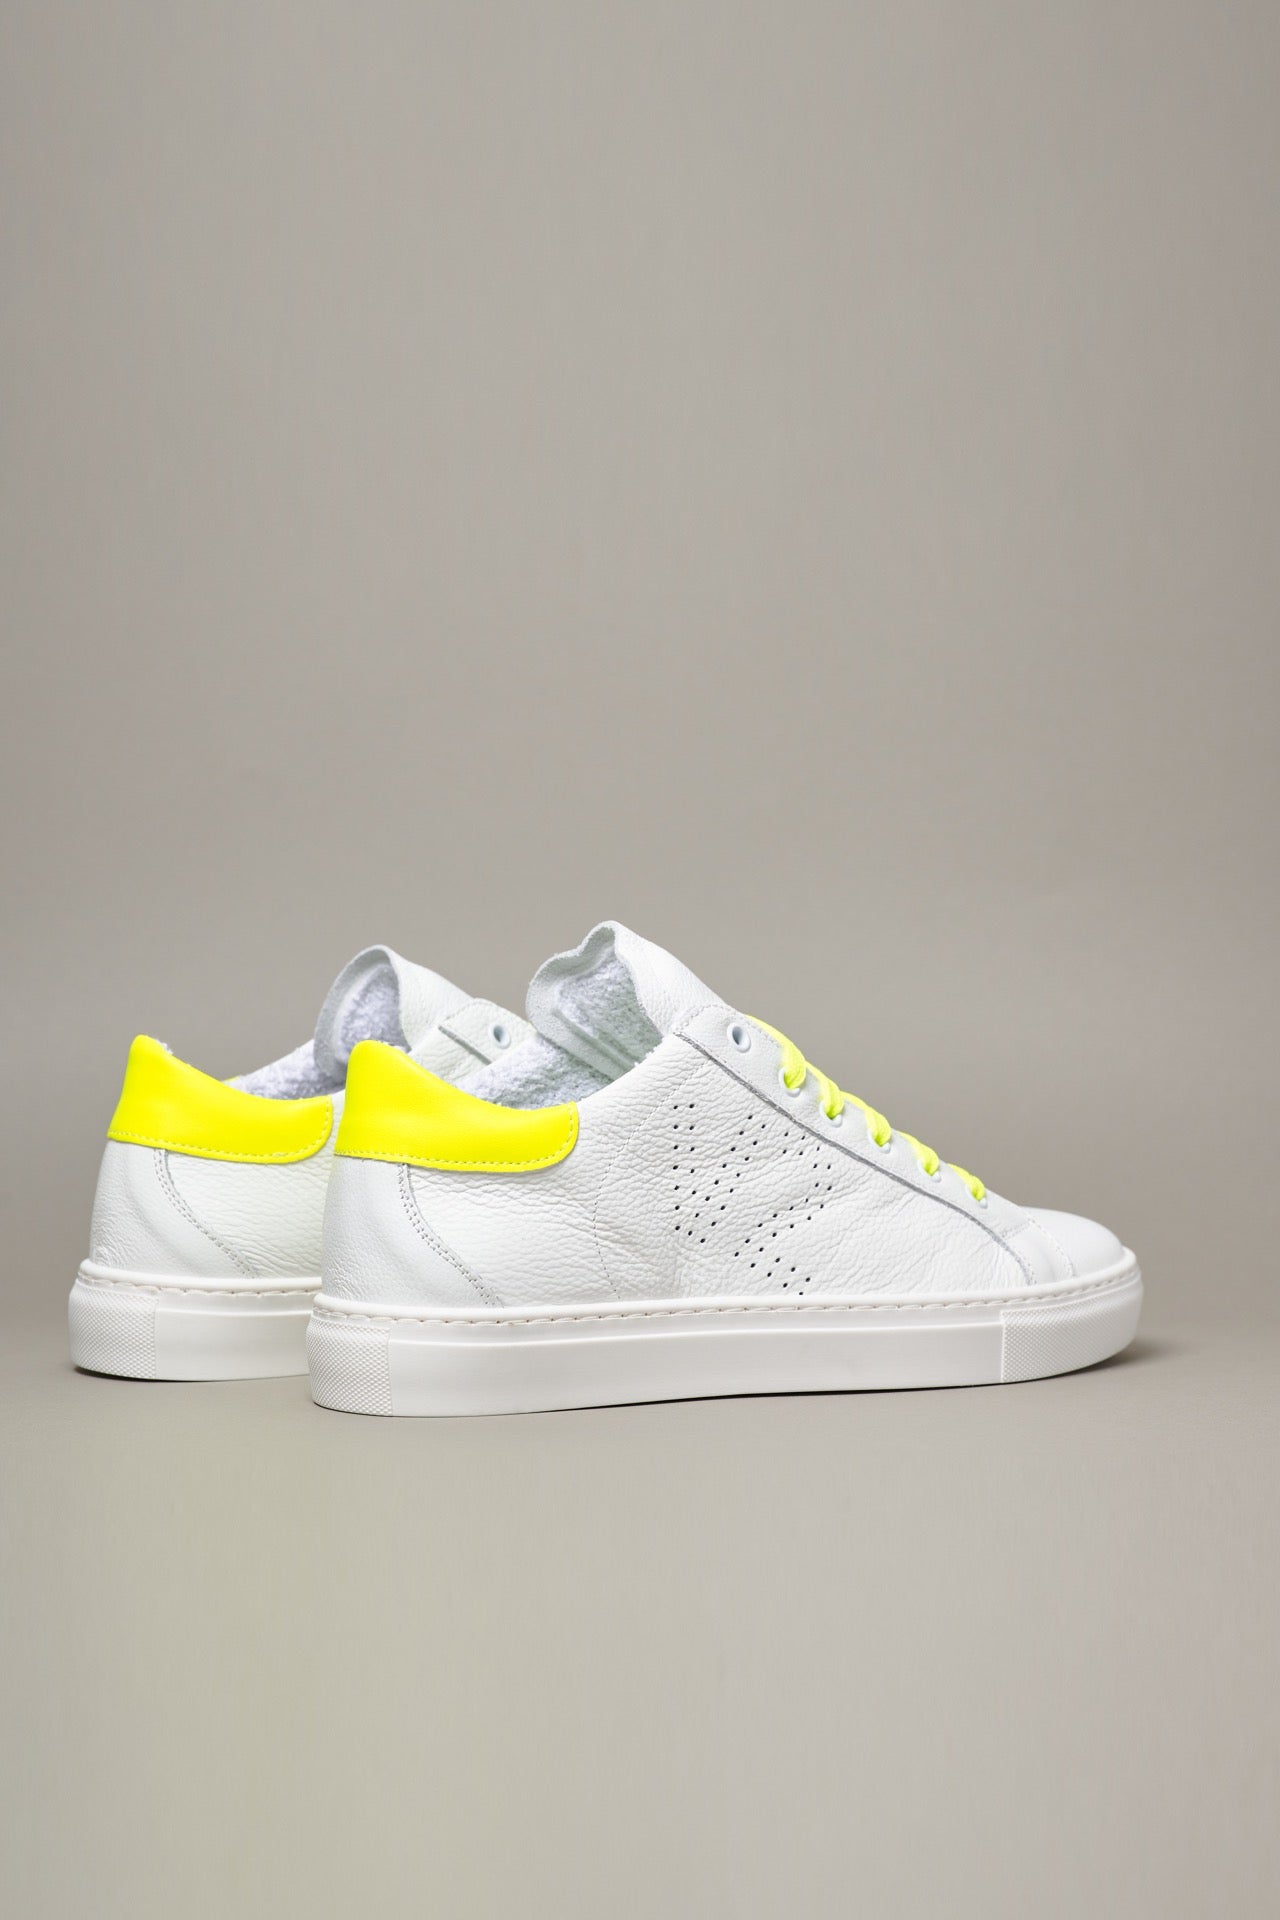 TENNIS - Sneakers a suola bassa Bianca con retro e lacci Giallo Fluo